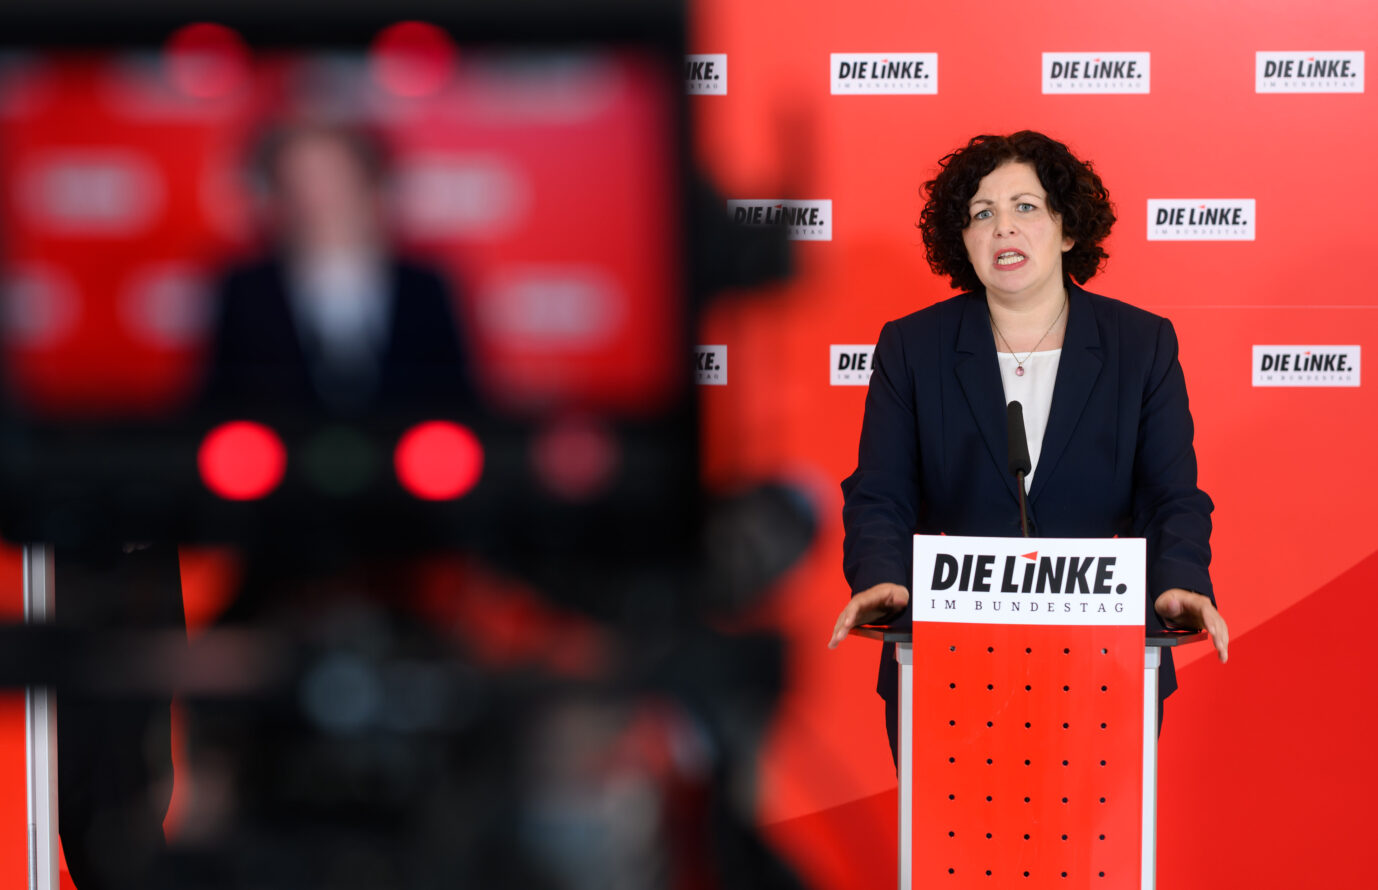 Die Linksfraktionschefin im Bundestag Amira Mohamed Ali findet die Brandmauerdiskussion rund um das Abstimmungsverhalten der Thüringer CDU absurd Foto: picture alliance/dpa | Bernd von Jutrczenka